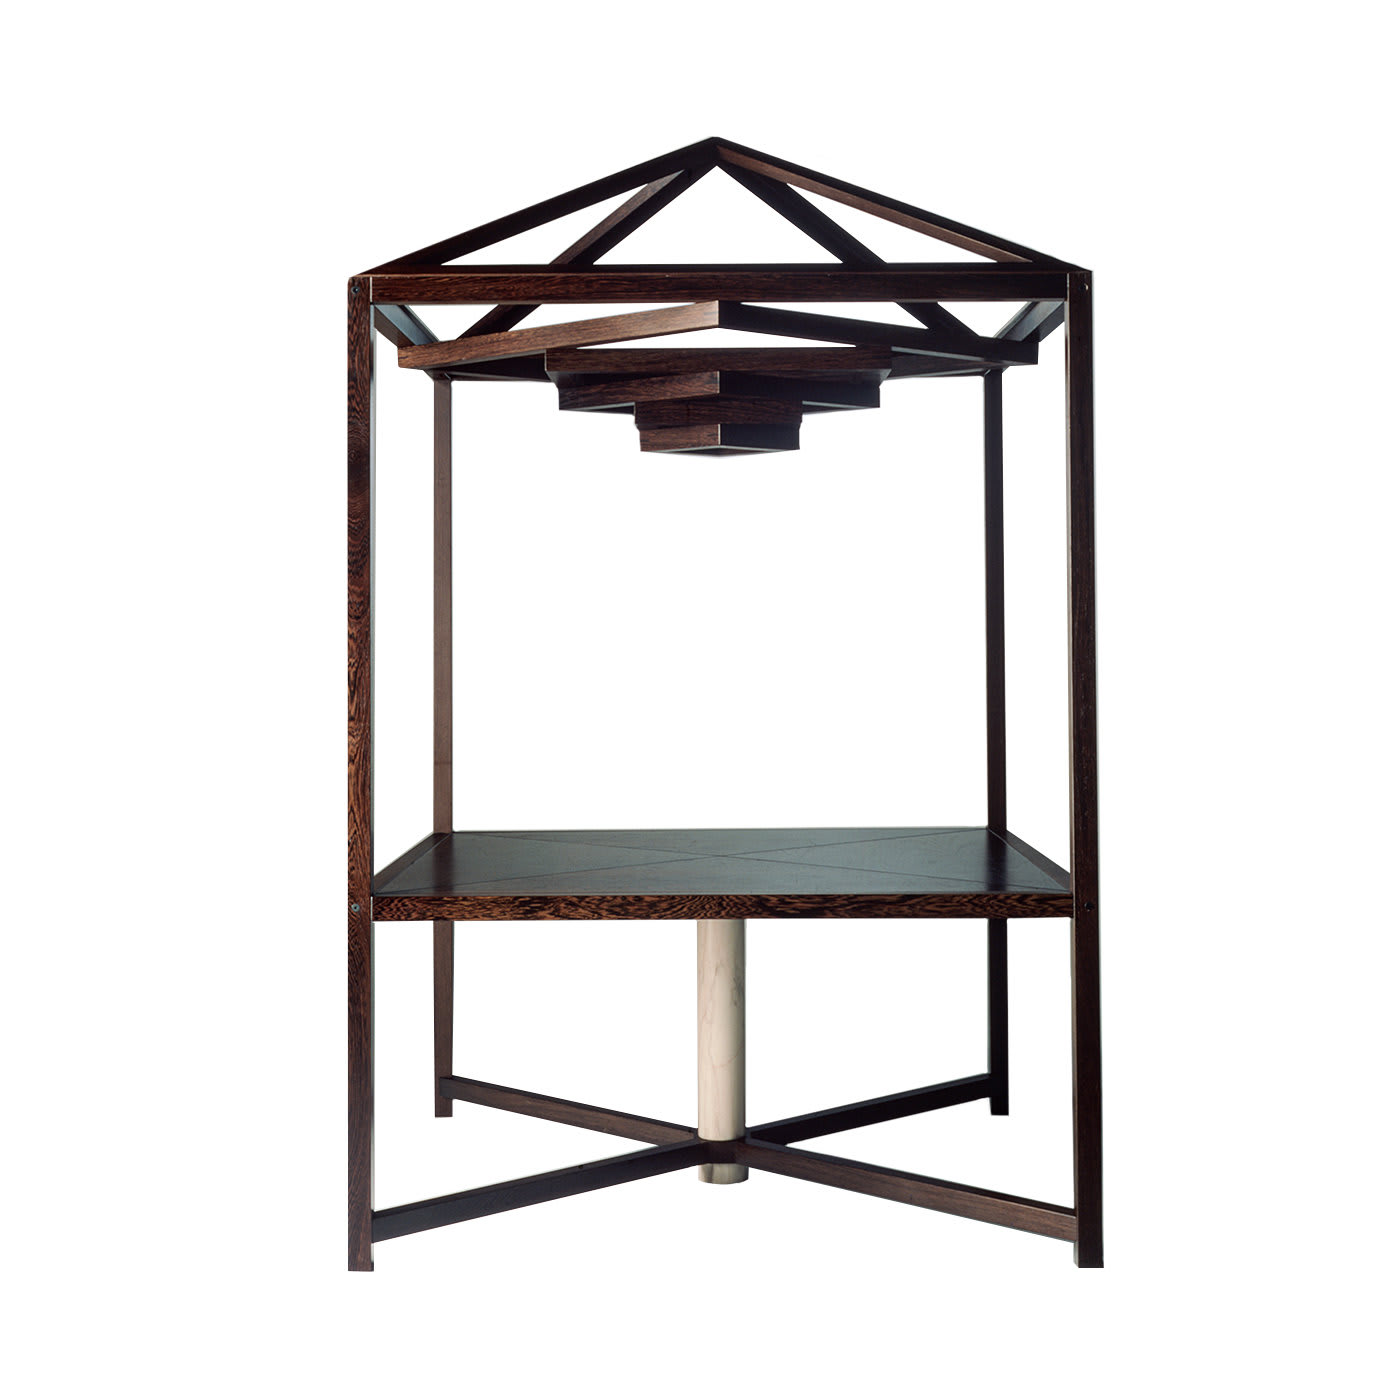 Megaron Table by Ferdinando Meccani - Meccani Design